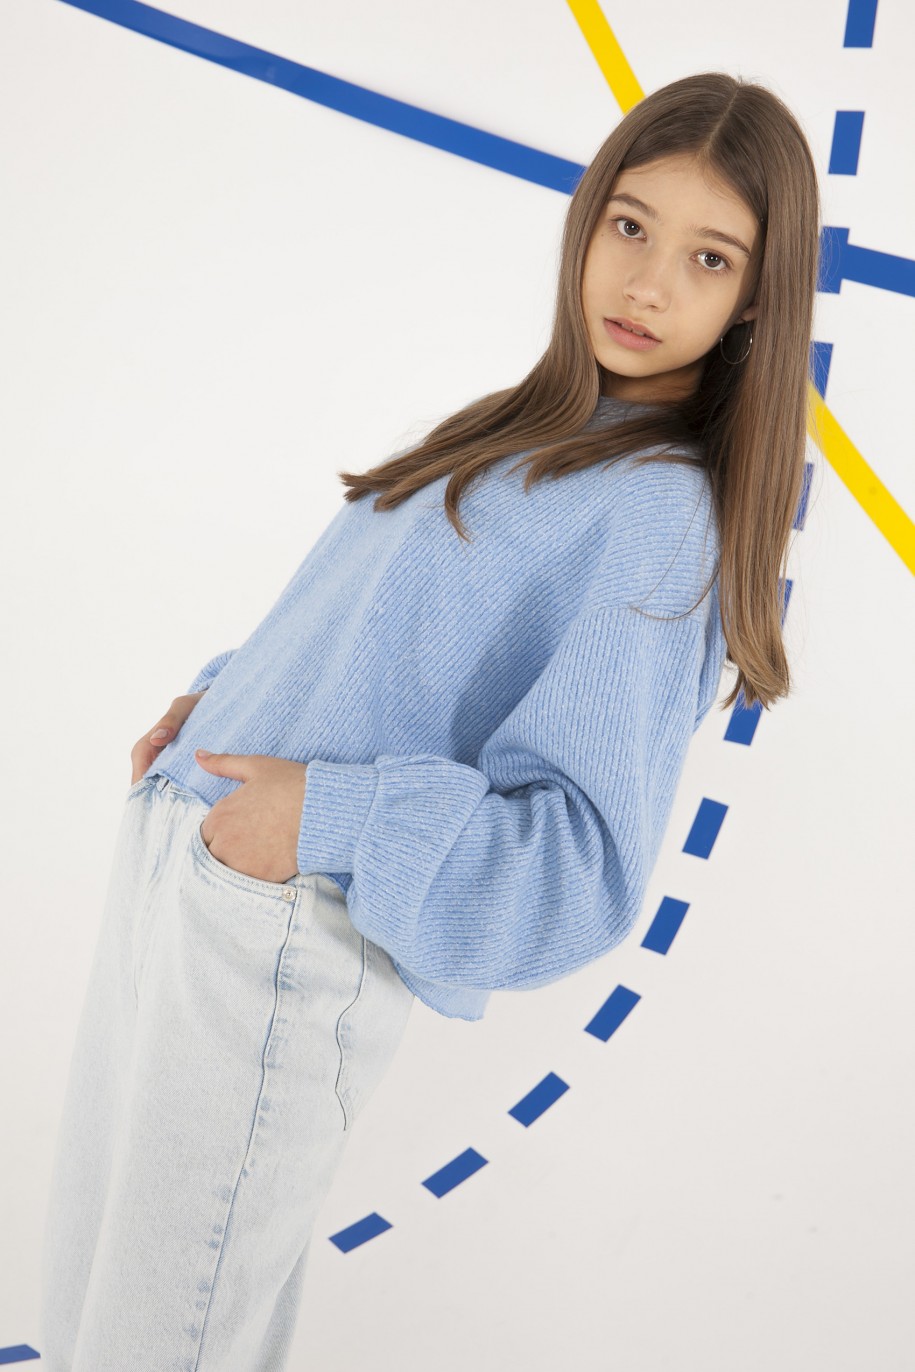 błękitny sweter dla dziewczyny  reporter young